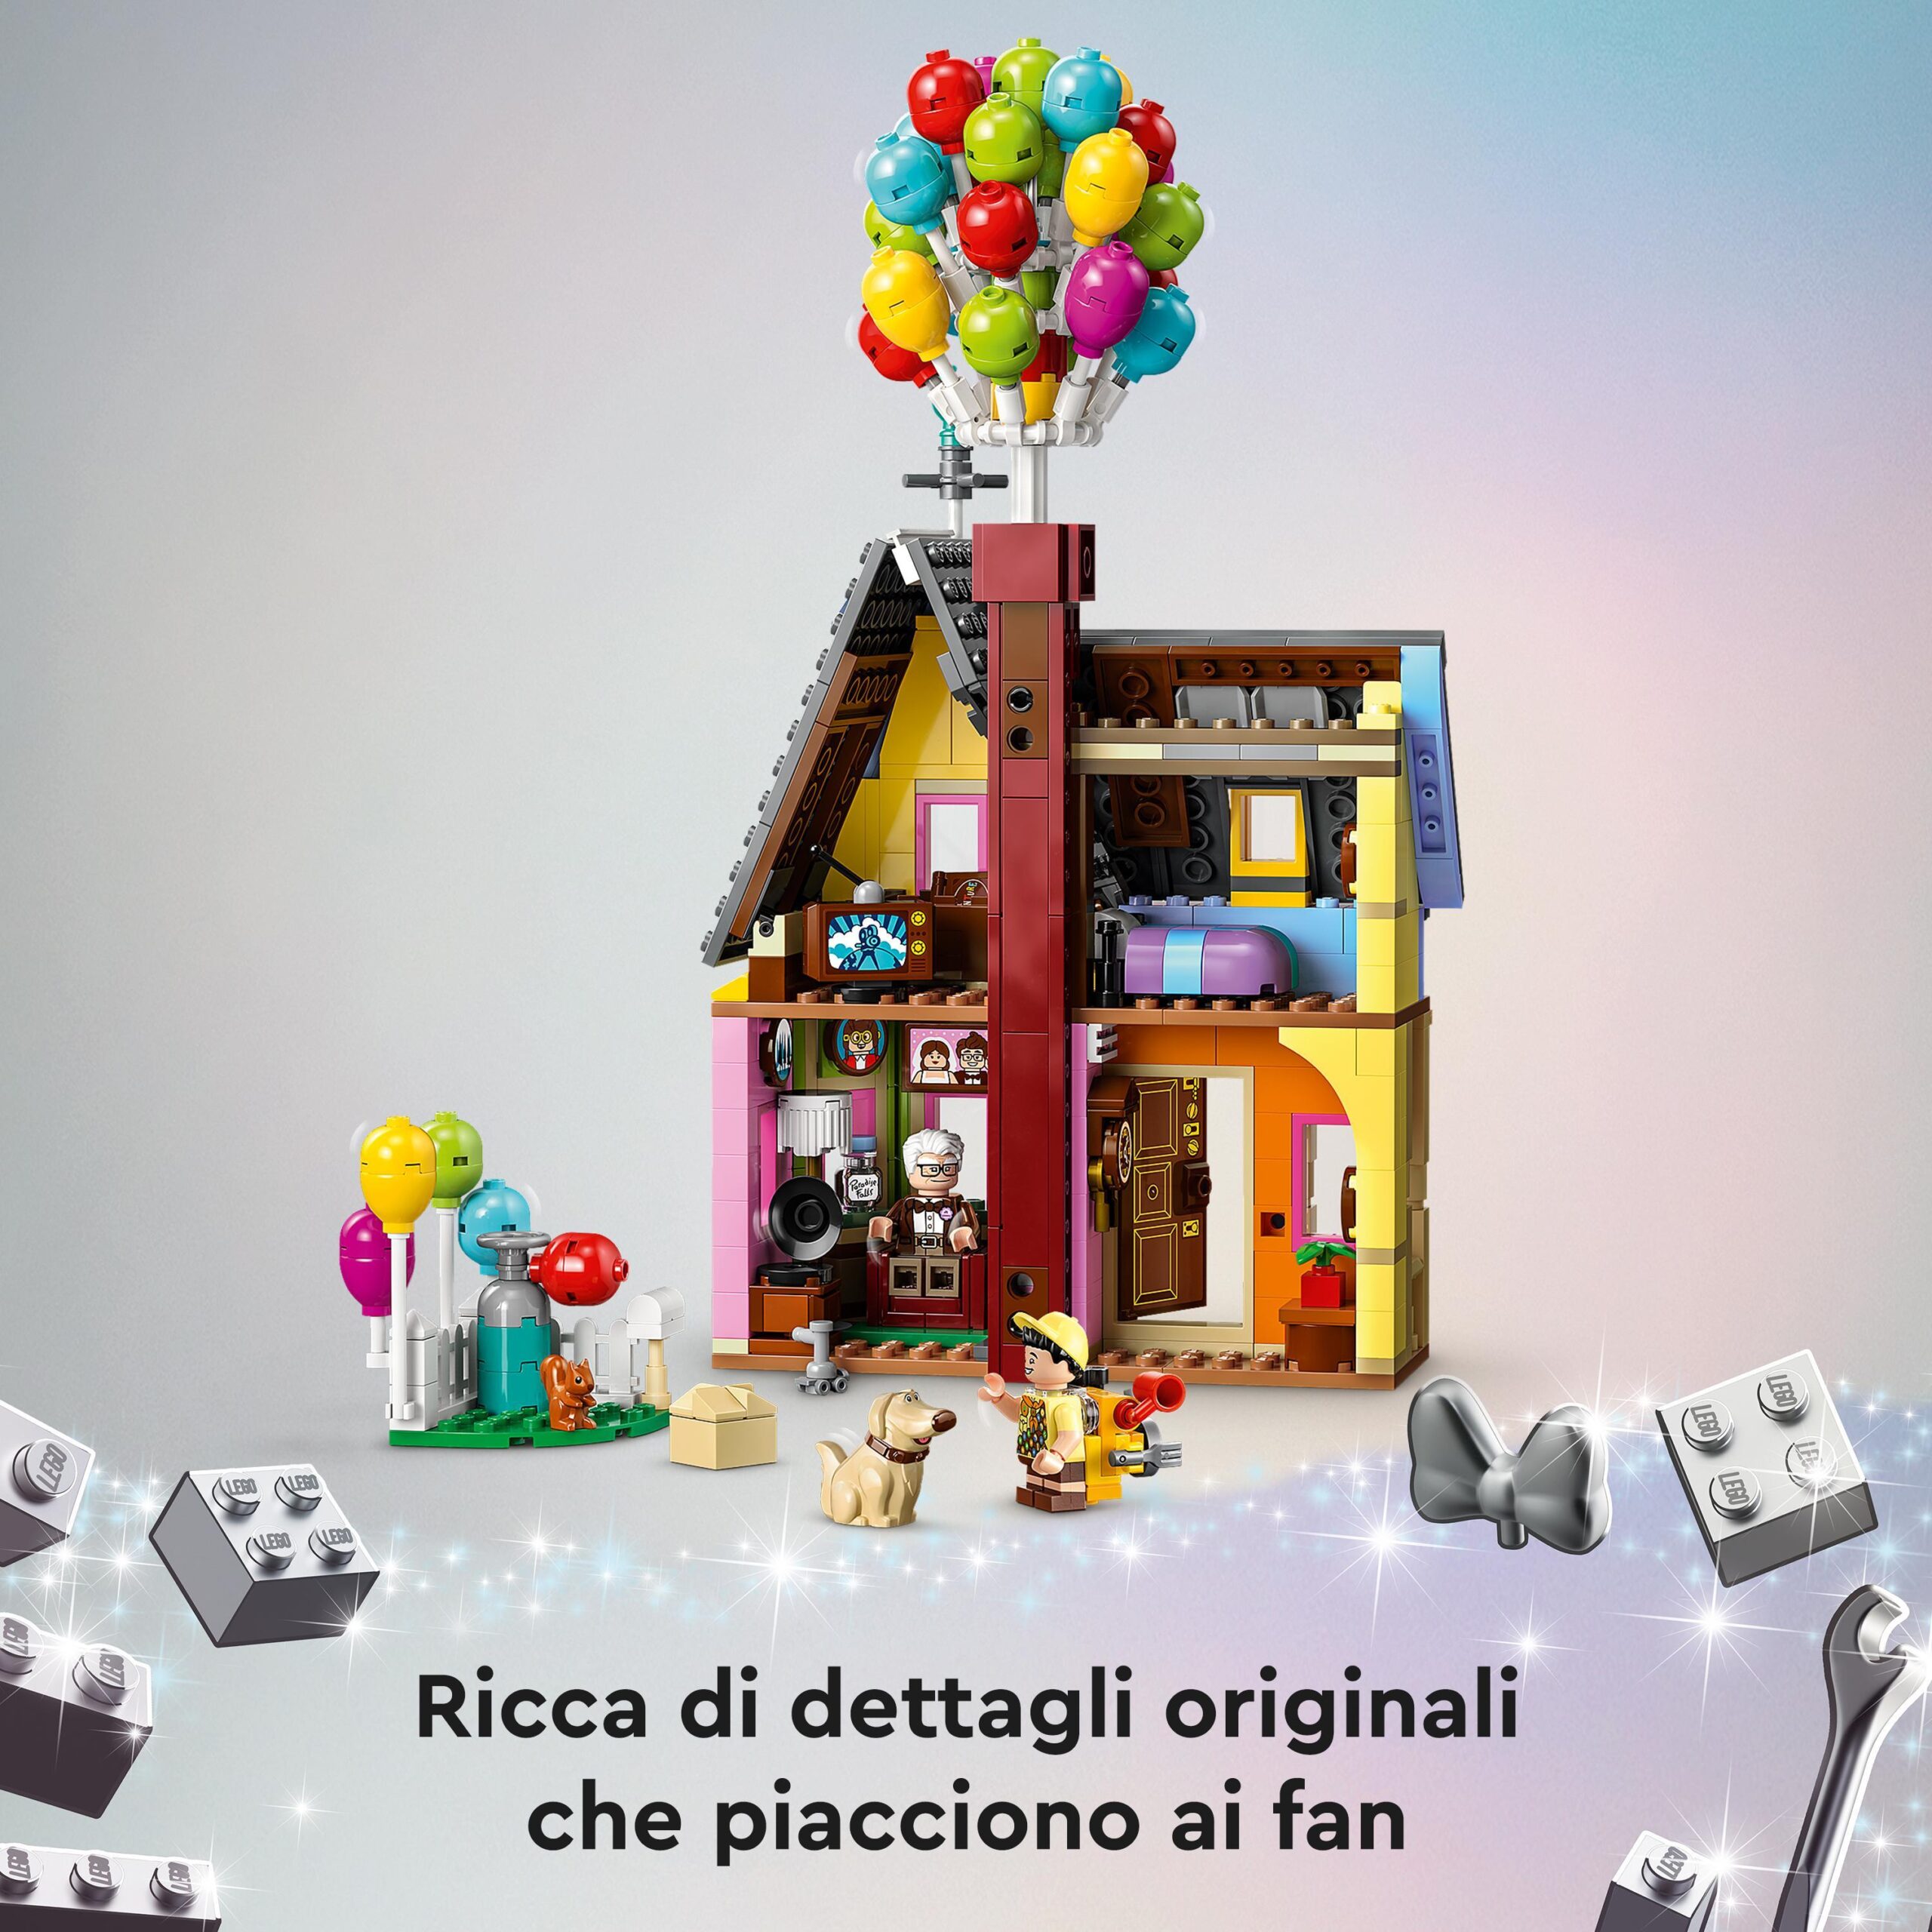 Lego disney e pixar 43217 casa di “up”, modellino con palloncini e figure di carl, russell e dug, set disney 100° anniversario - Lego